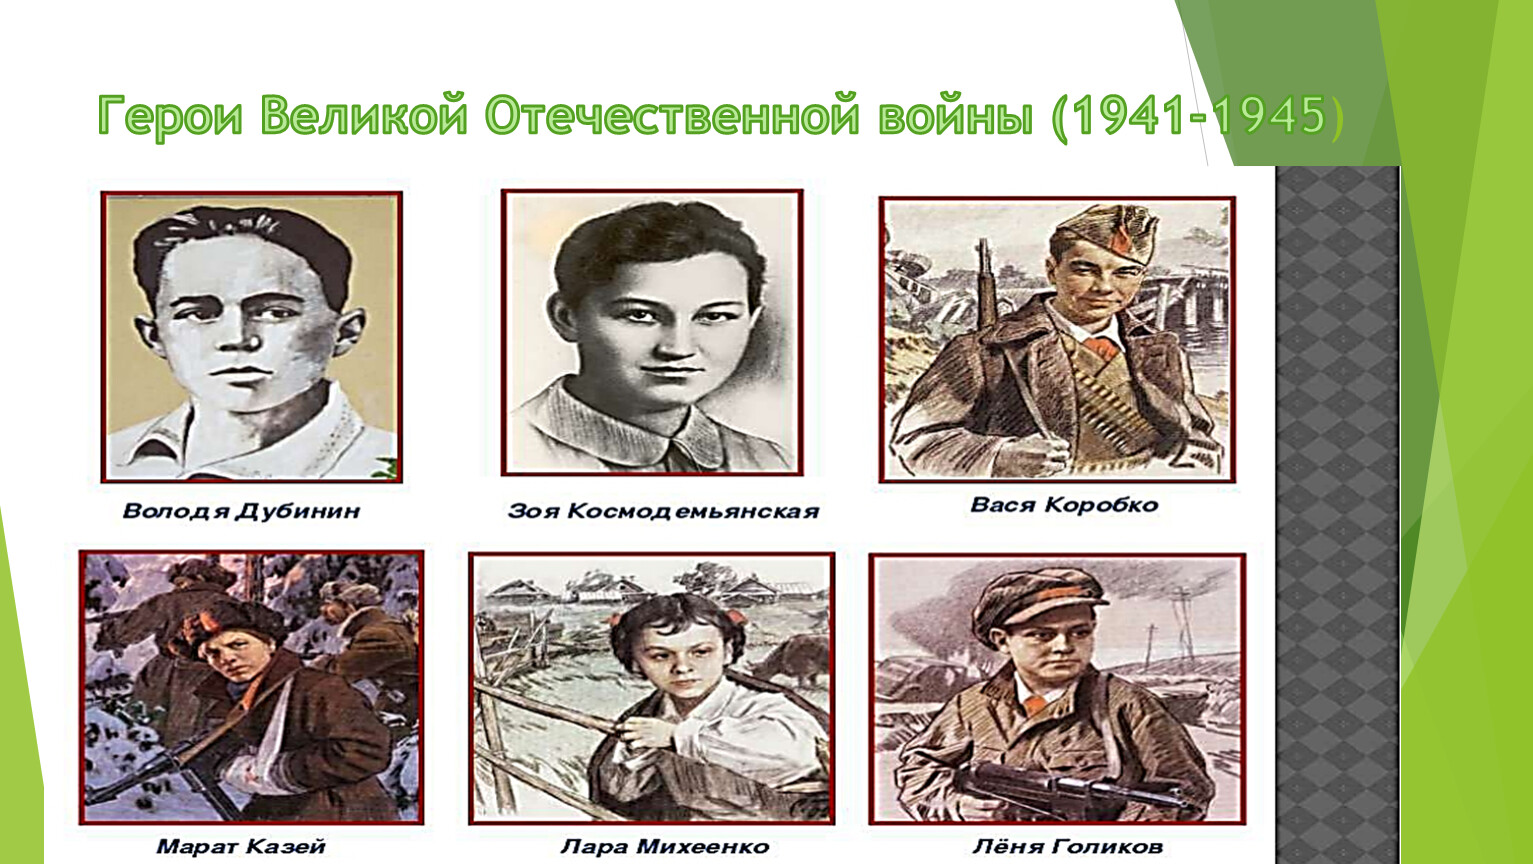 Герасимов пионеры-герои Великой Отечественной войны 1941-1945